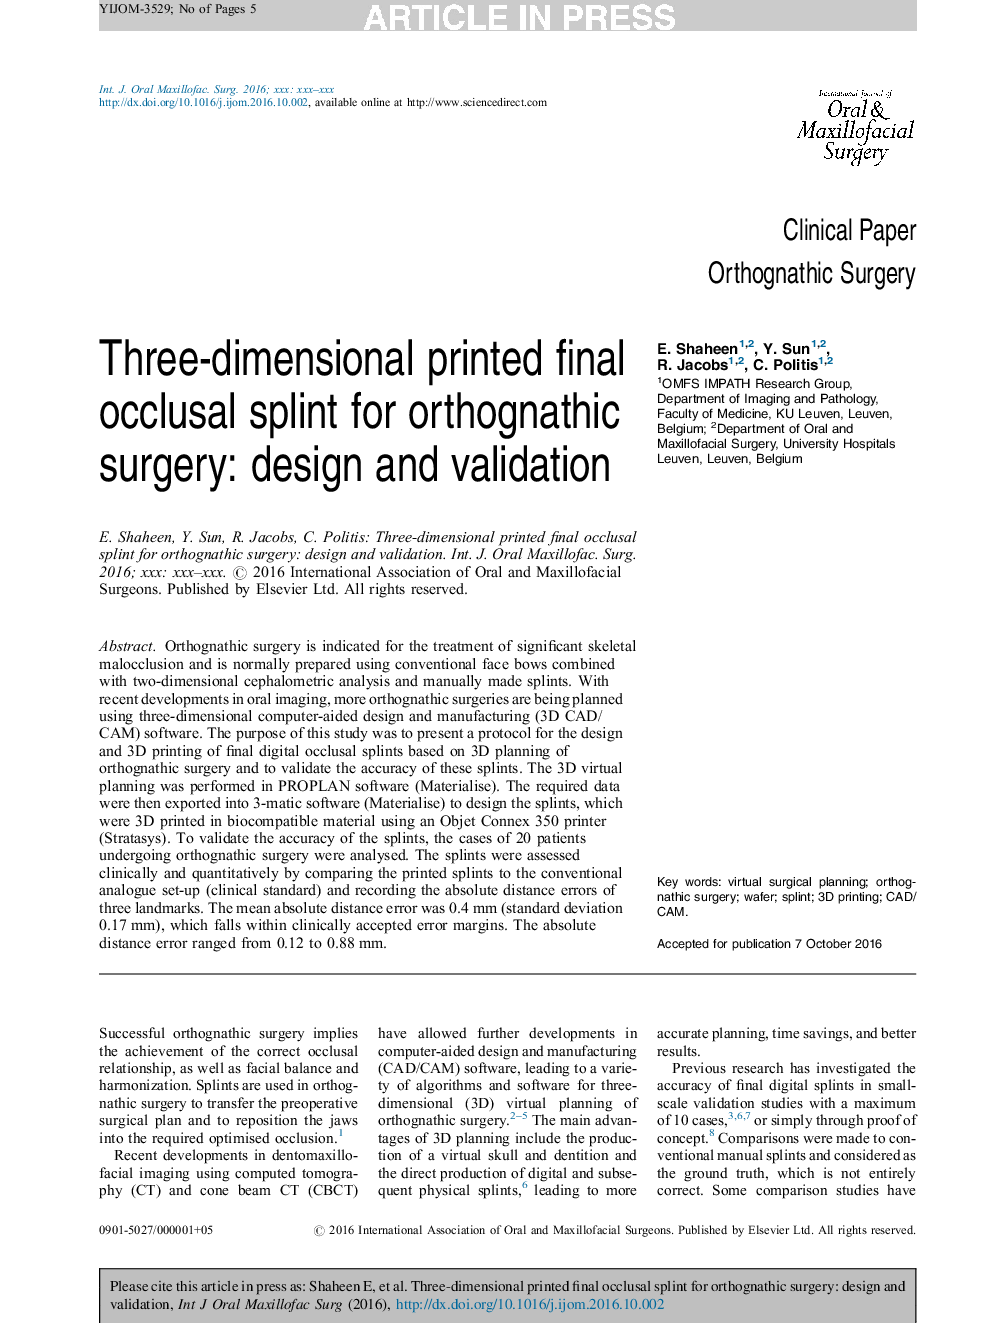 شبیه سازی اکلوزالی نهایی سه بعدی برای جراحی ارتوپاتیک: طراحی و اعتبار سنجی 